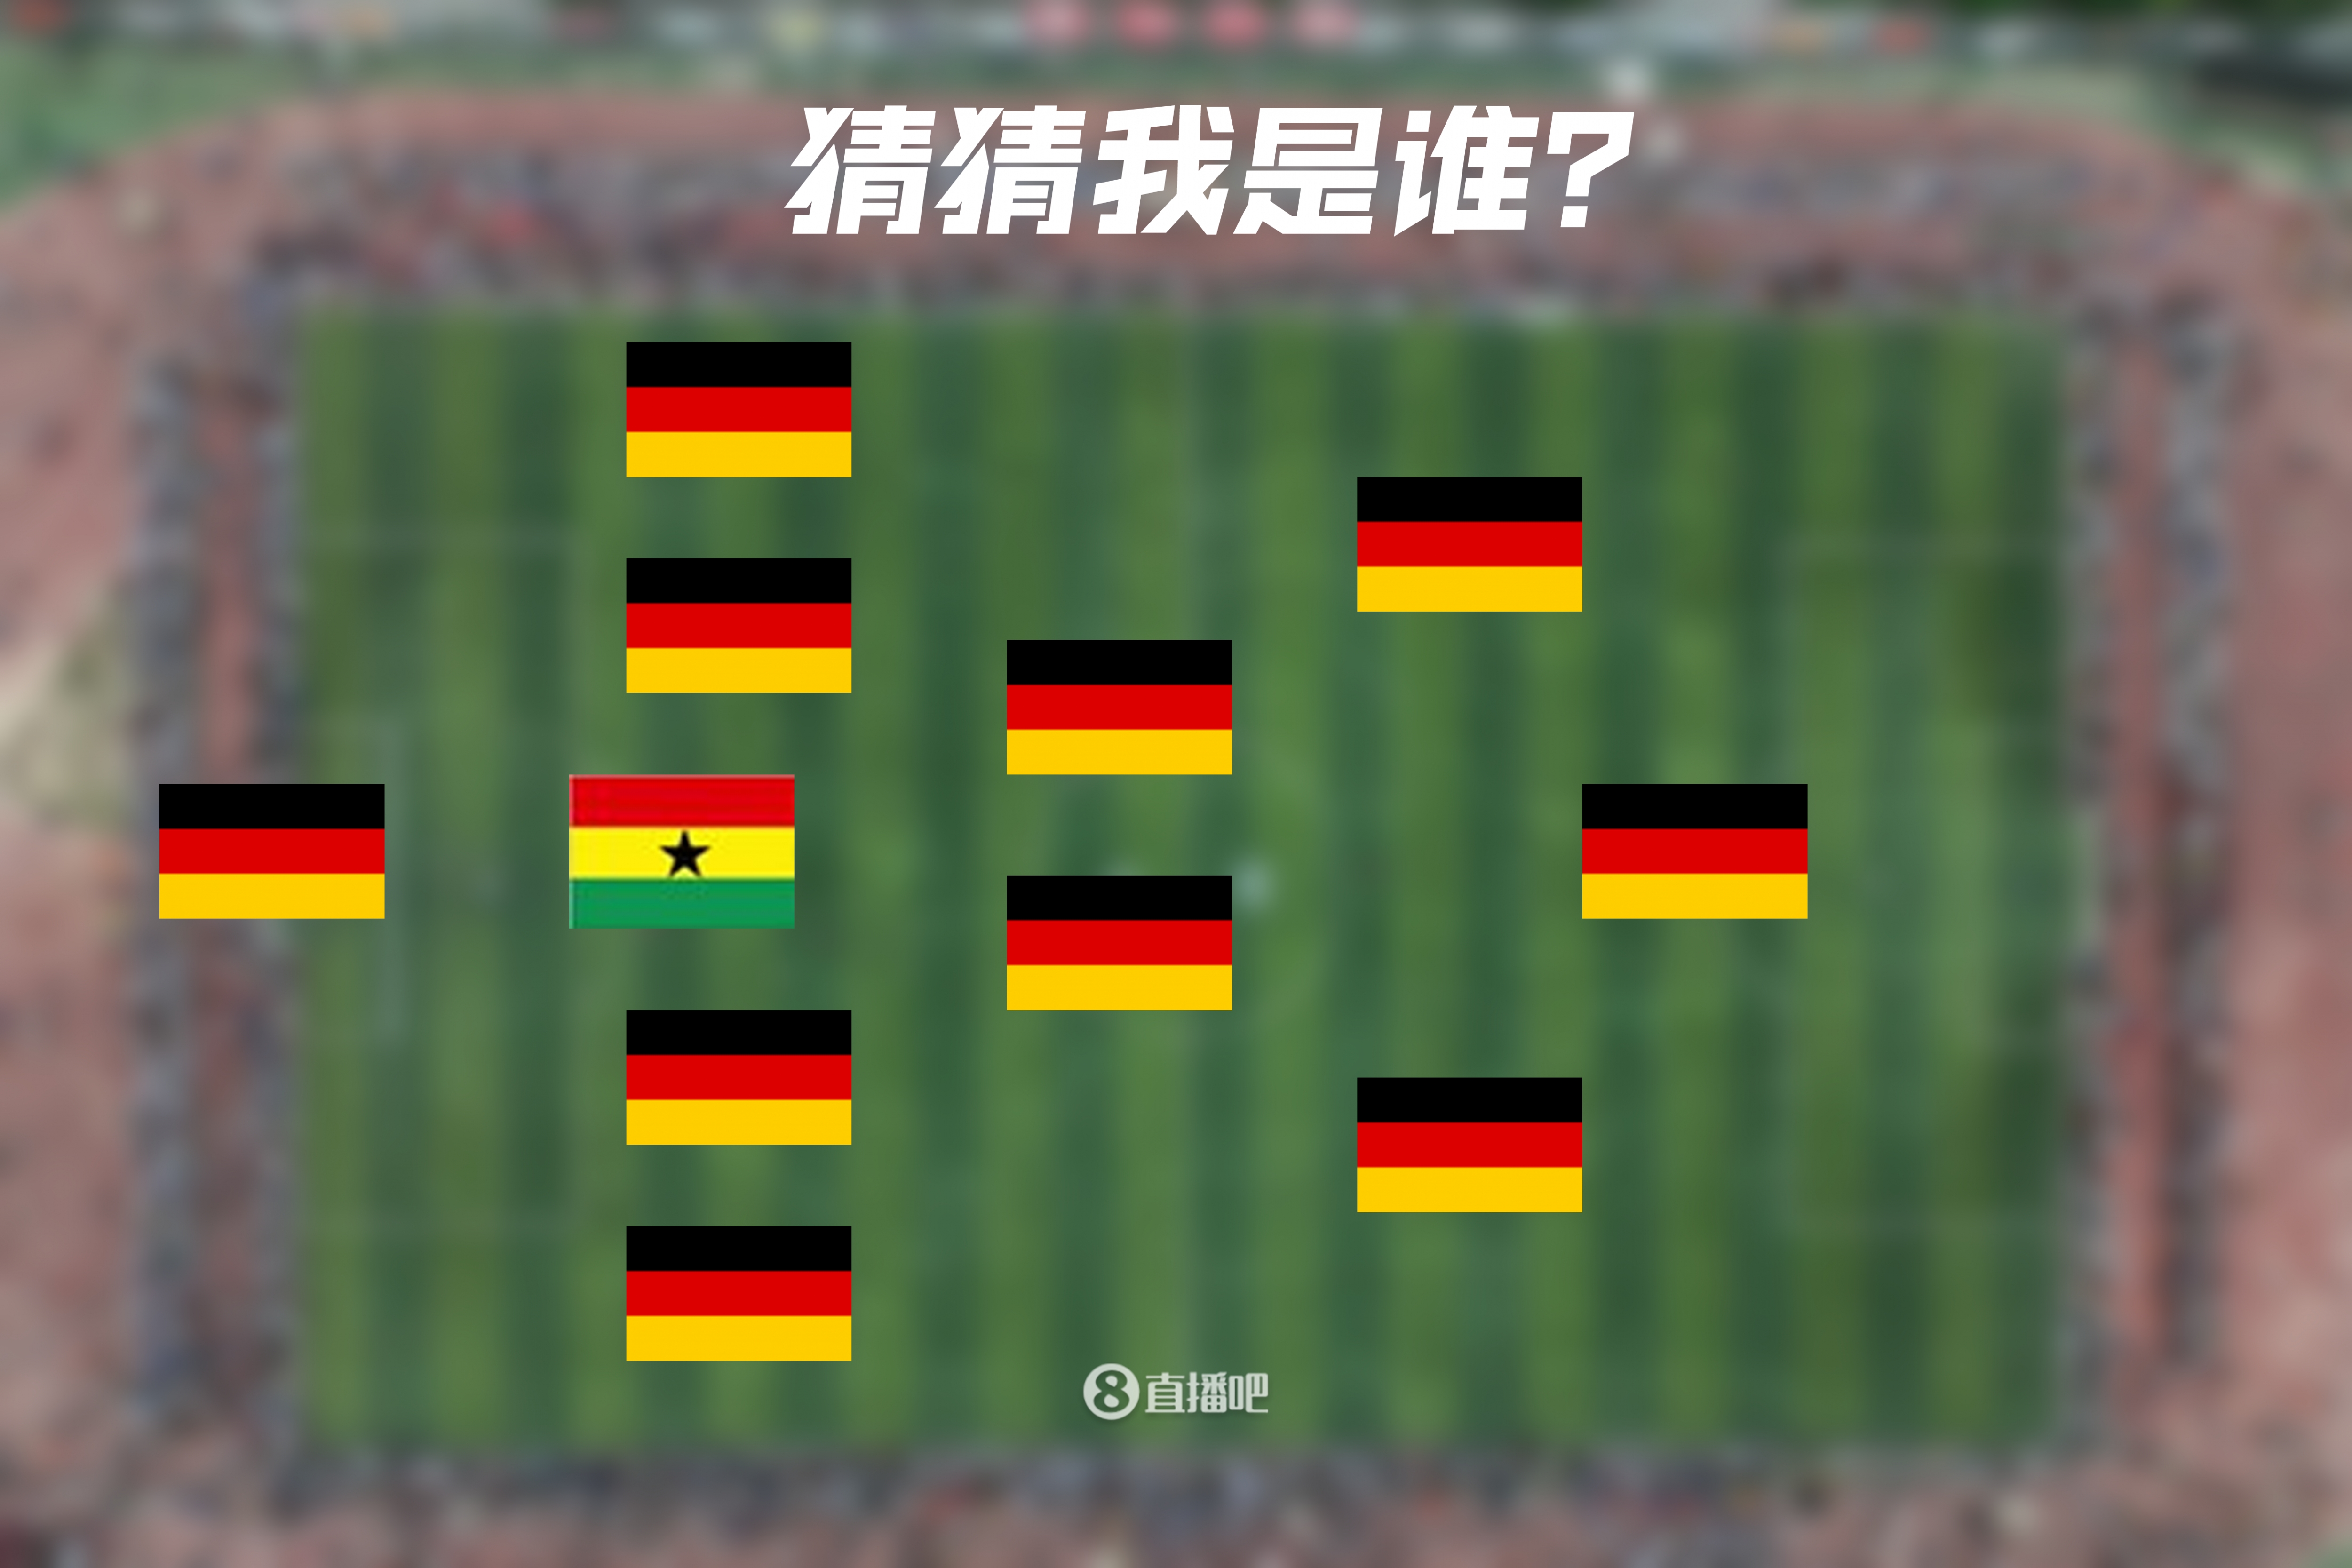 一眼懵逼😳加纳后卫+10个德国人，这是哪支队&他们分别是谁？